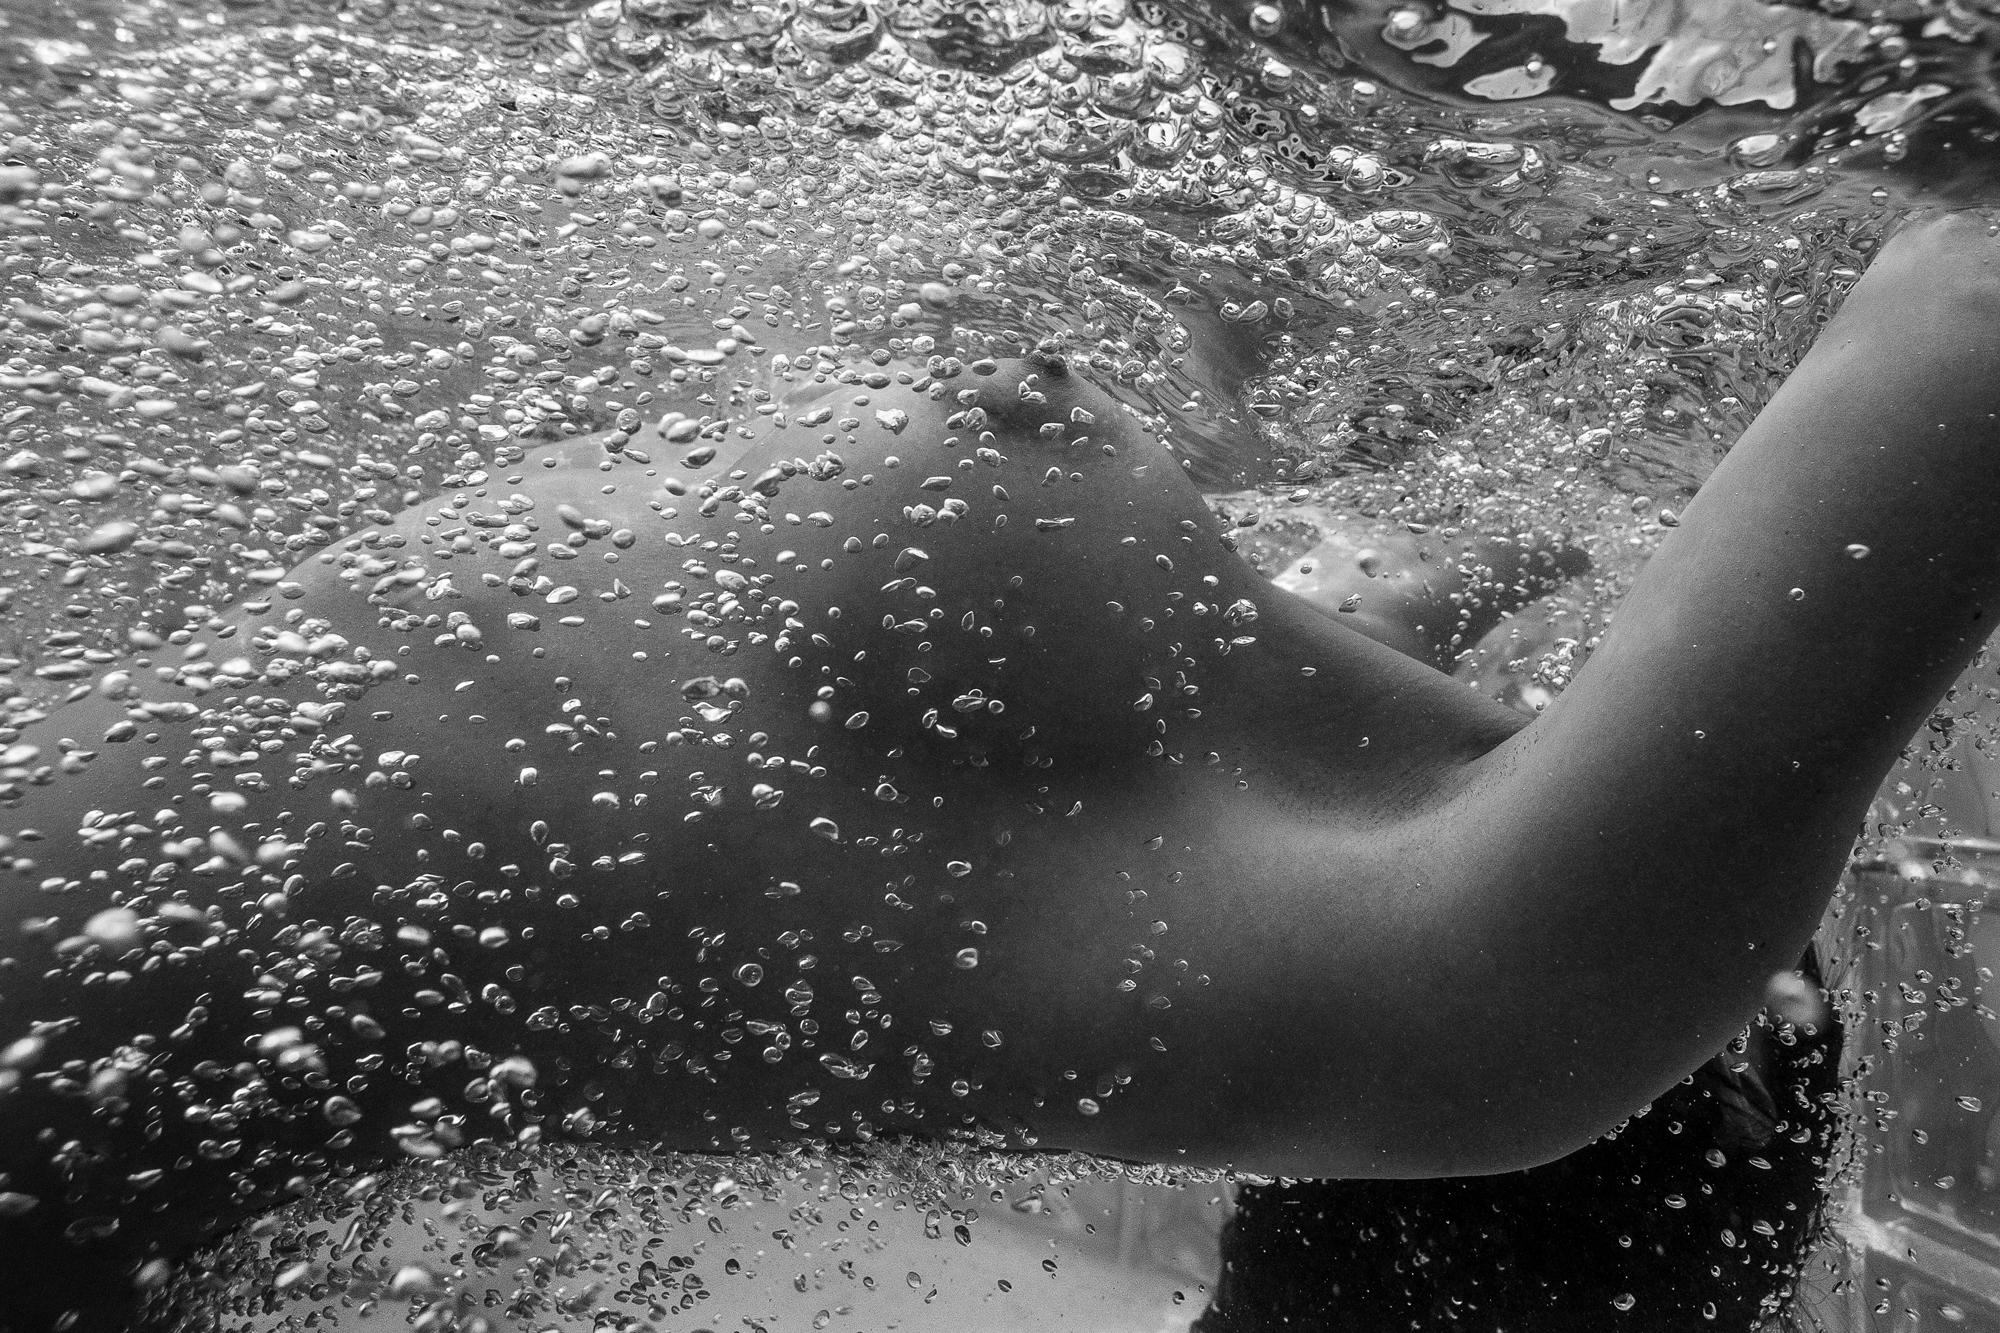 Nude Photograph Alex Sher - Bubbles - photographie de nu sous-marine b&w - impression pigmentaire d'archive 23 x 35 pouces